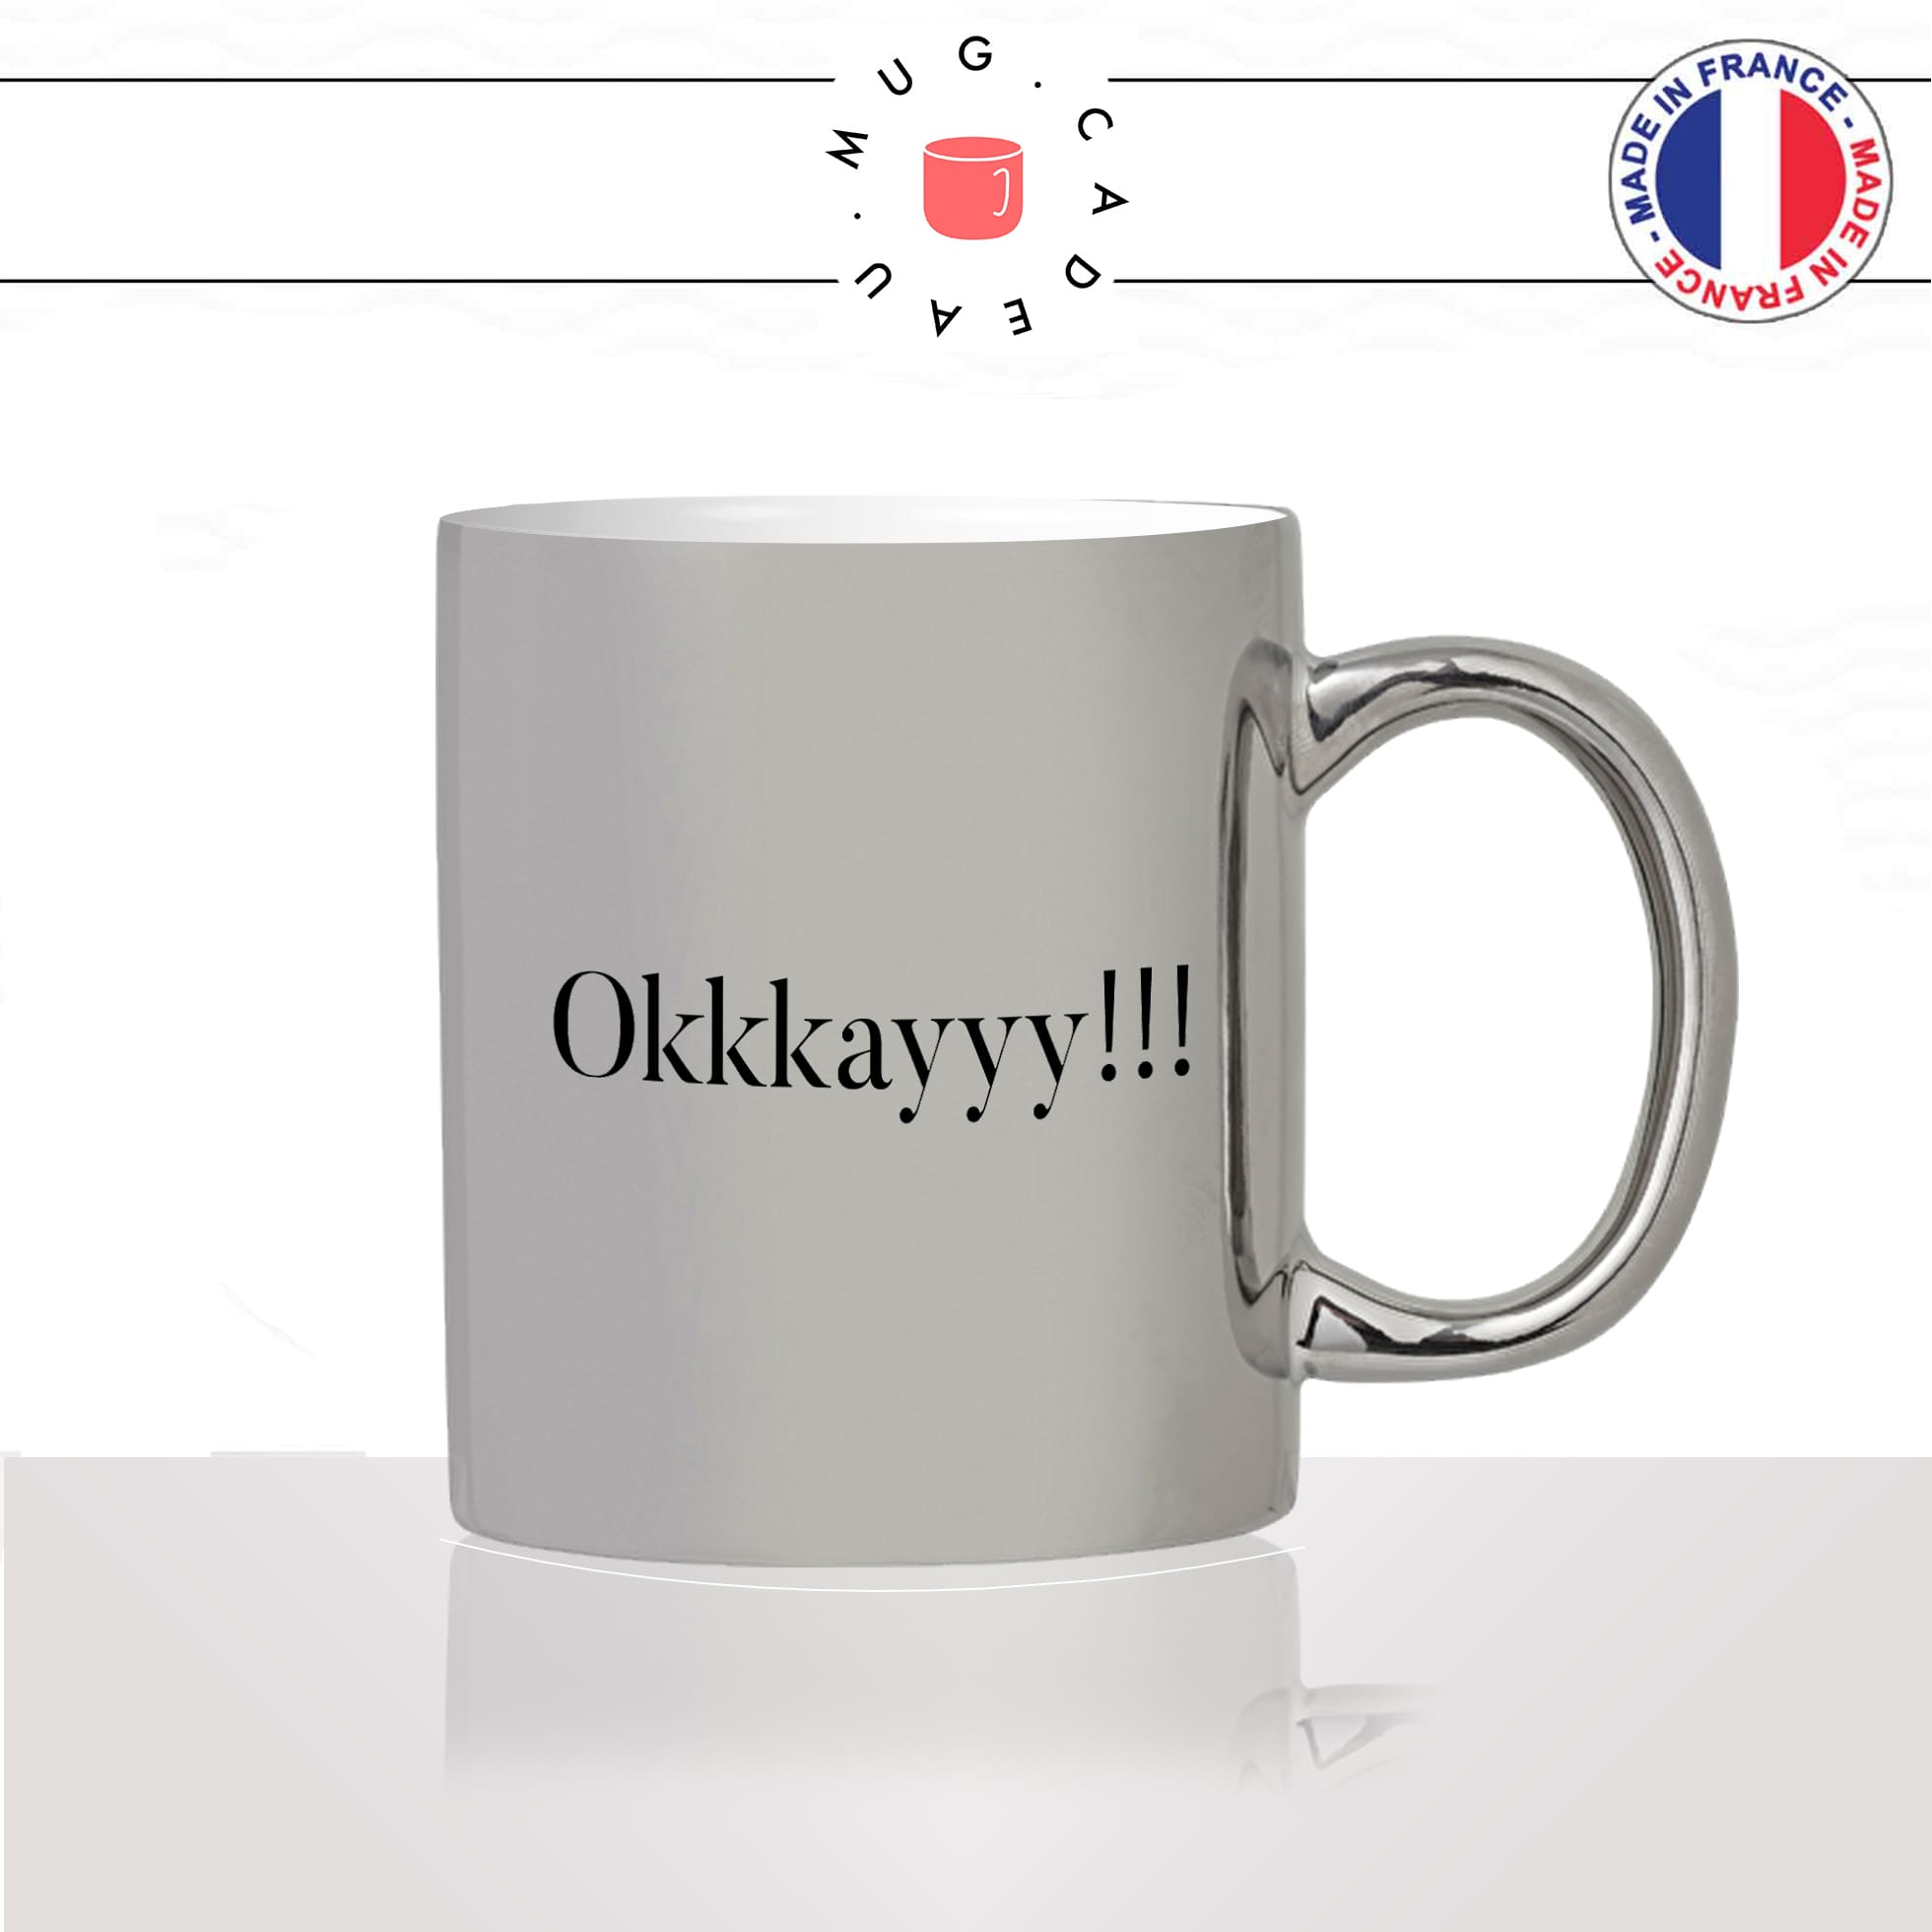 mug-tasse-argent-argenté-silver-film-les-visiteurs-okkkkay-ok-okay-clavier-collegue-humour-francais-idée-cadeau-fun-cool-café-thé2